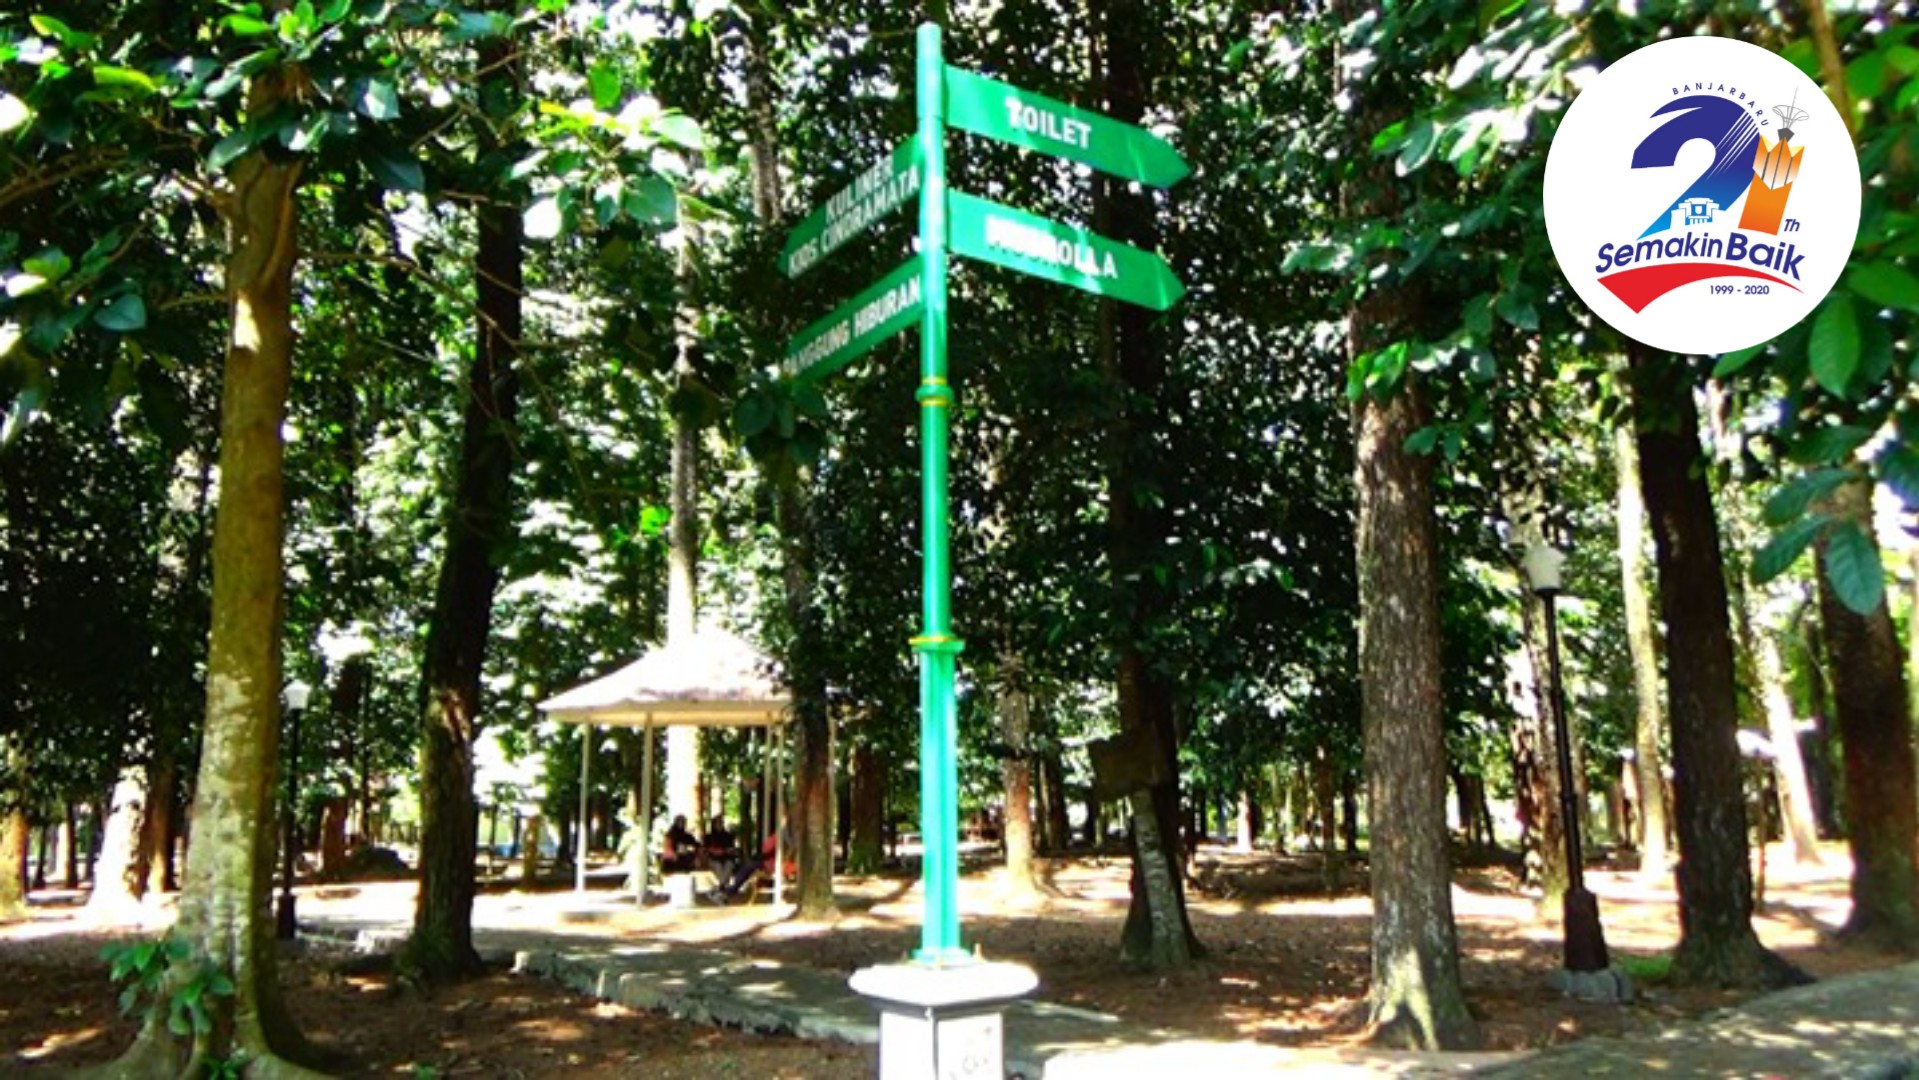 Area Budidaya Pohon Jadi Destinasi Wisata Dan Tempat